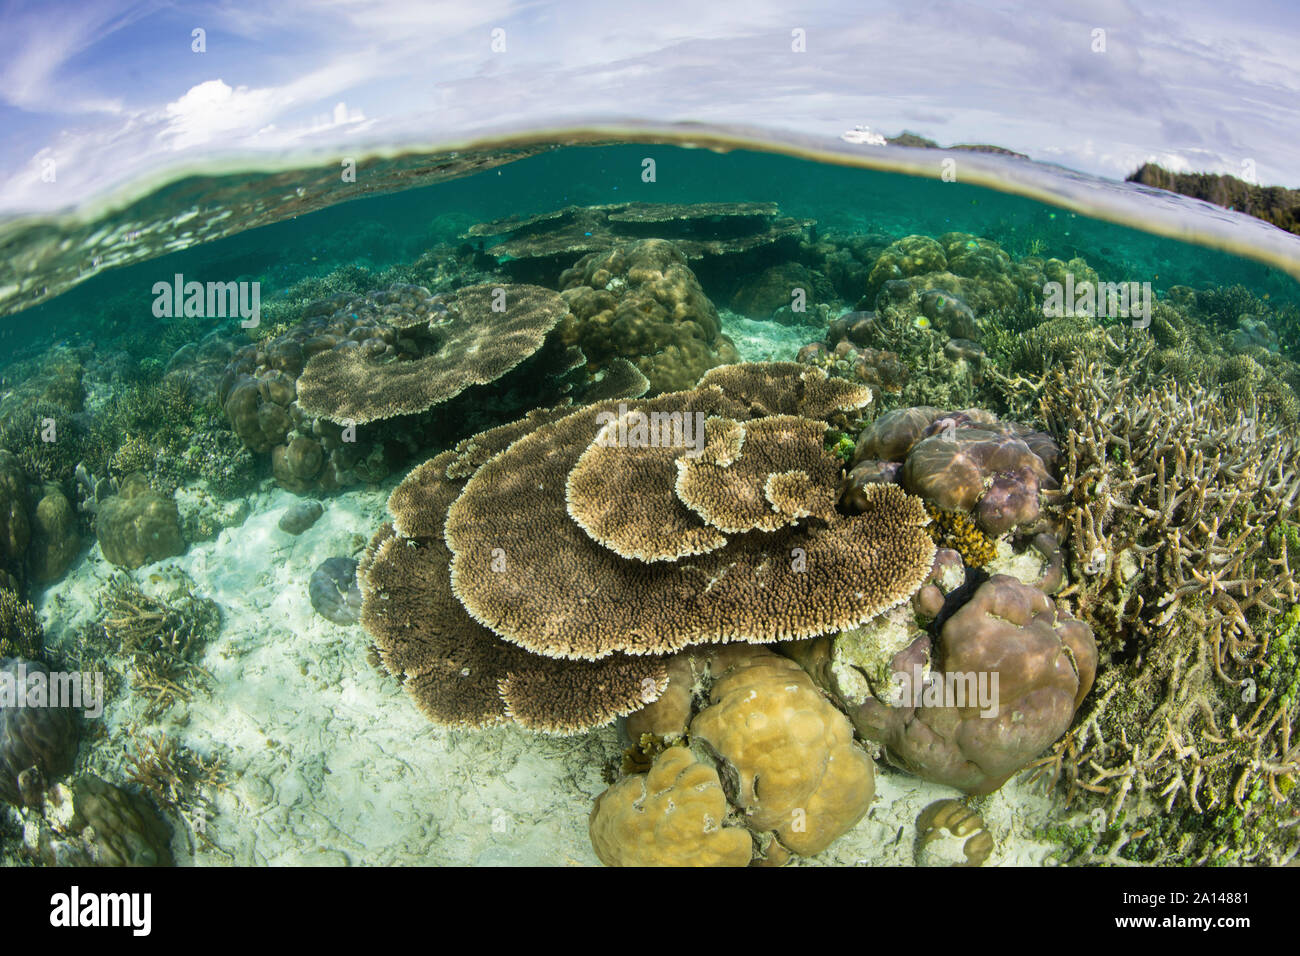 Beaux coraux durs poussent dans des eaux peu profondes dans une partie reculée de Raja Ampat, en Indonésie. Banque D'Images